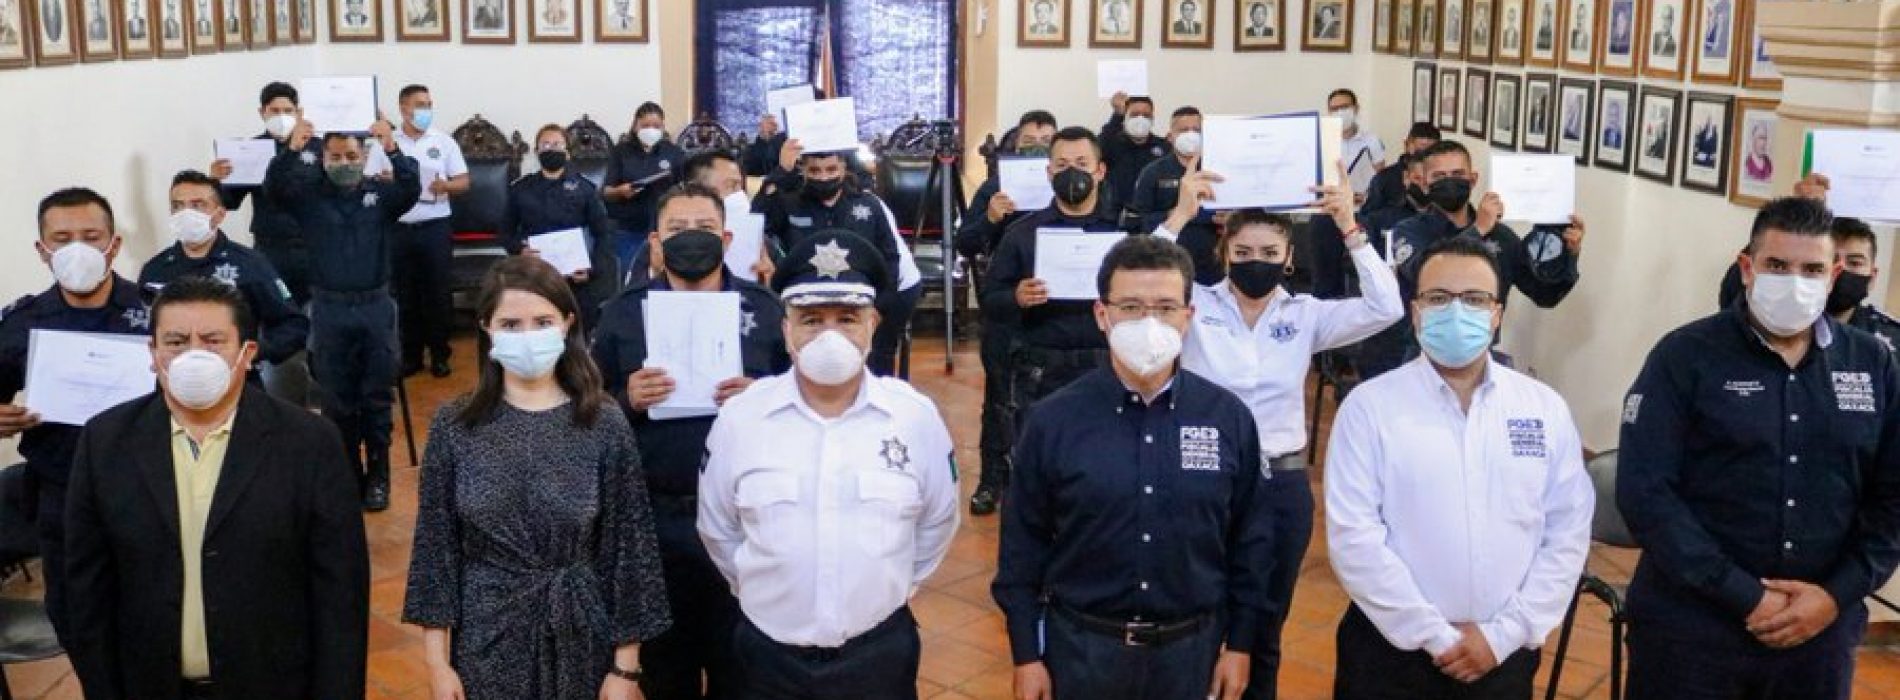 Avanza conformación de la Unidad de Investigación de la Policía Municipal de Oaxaca de Juárez